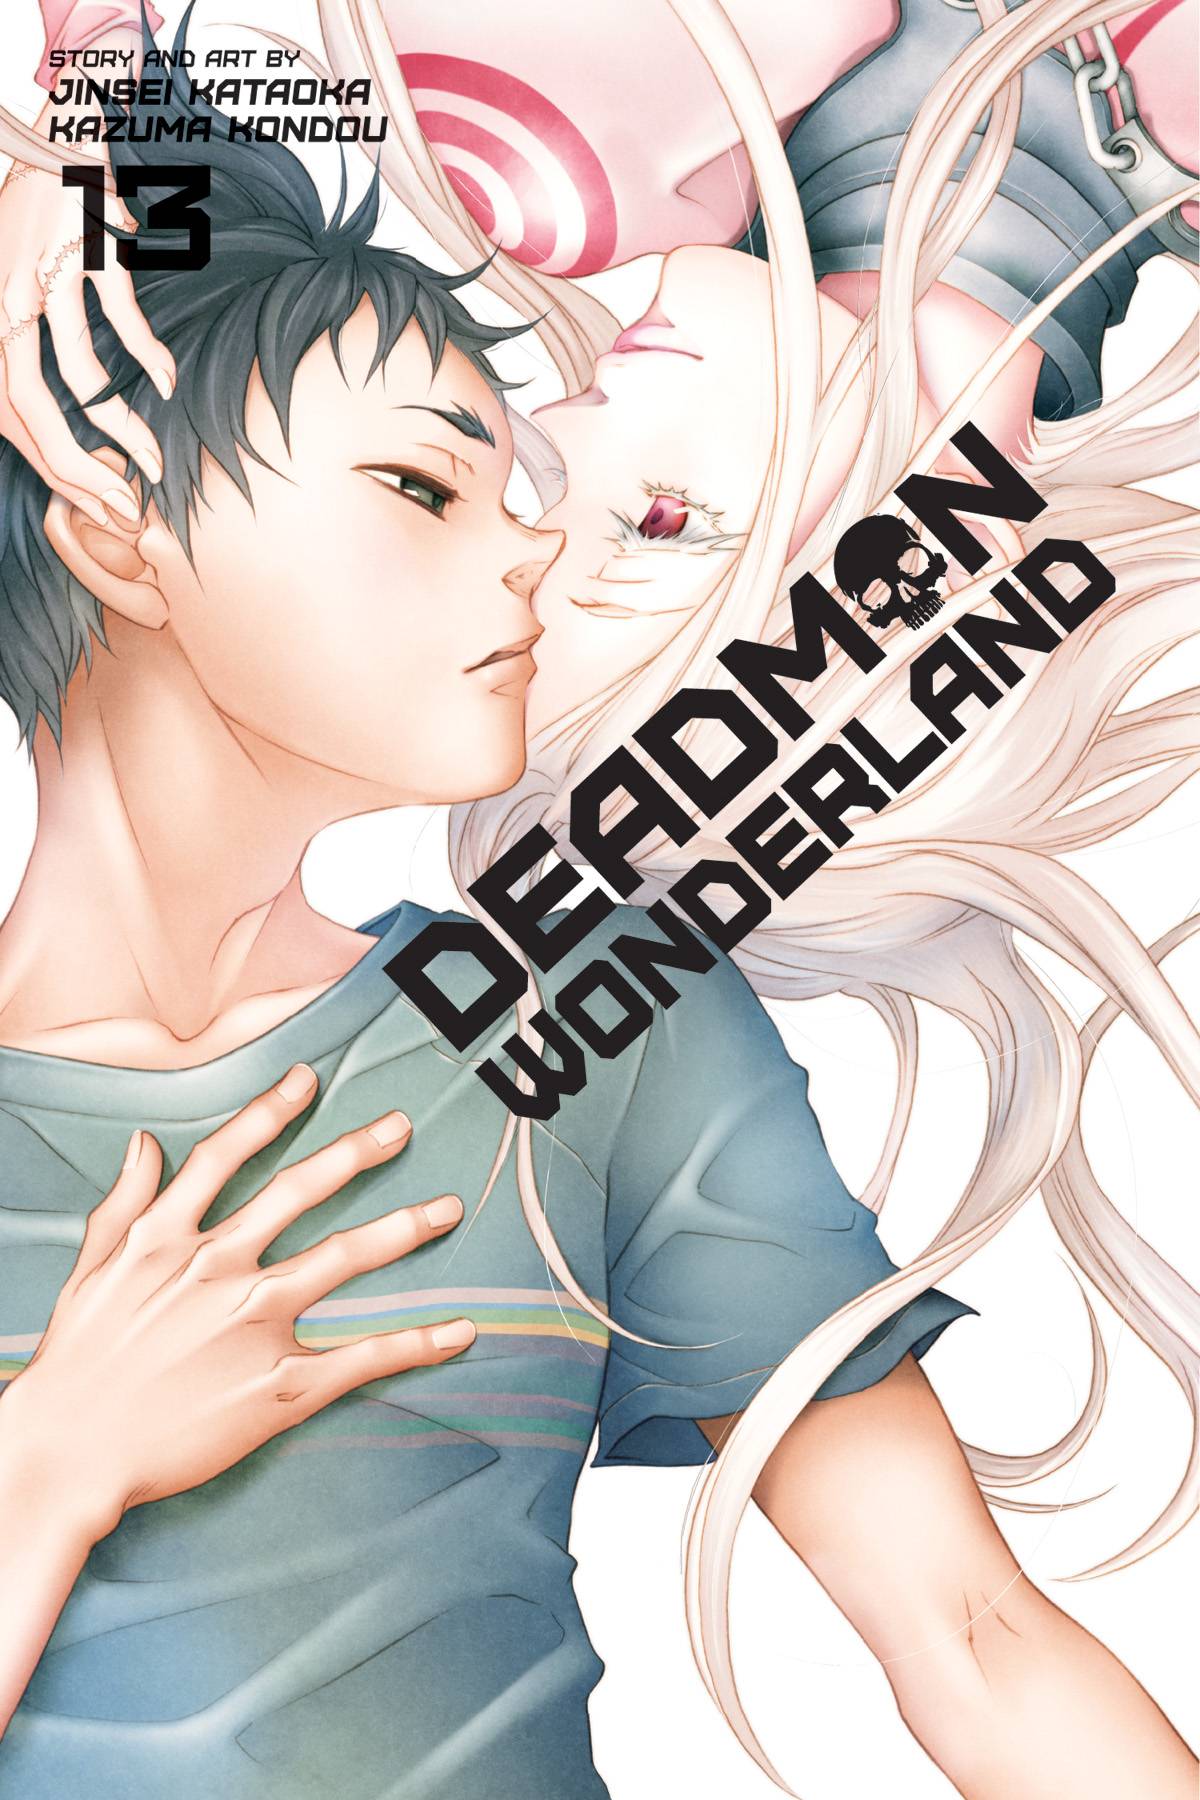 Deadman Wonderland Manga Volume 13